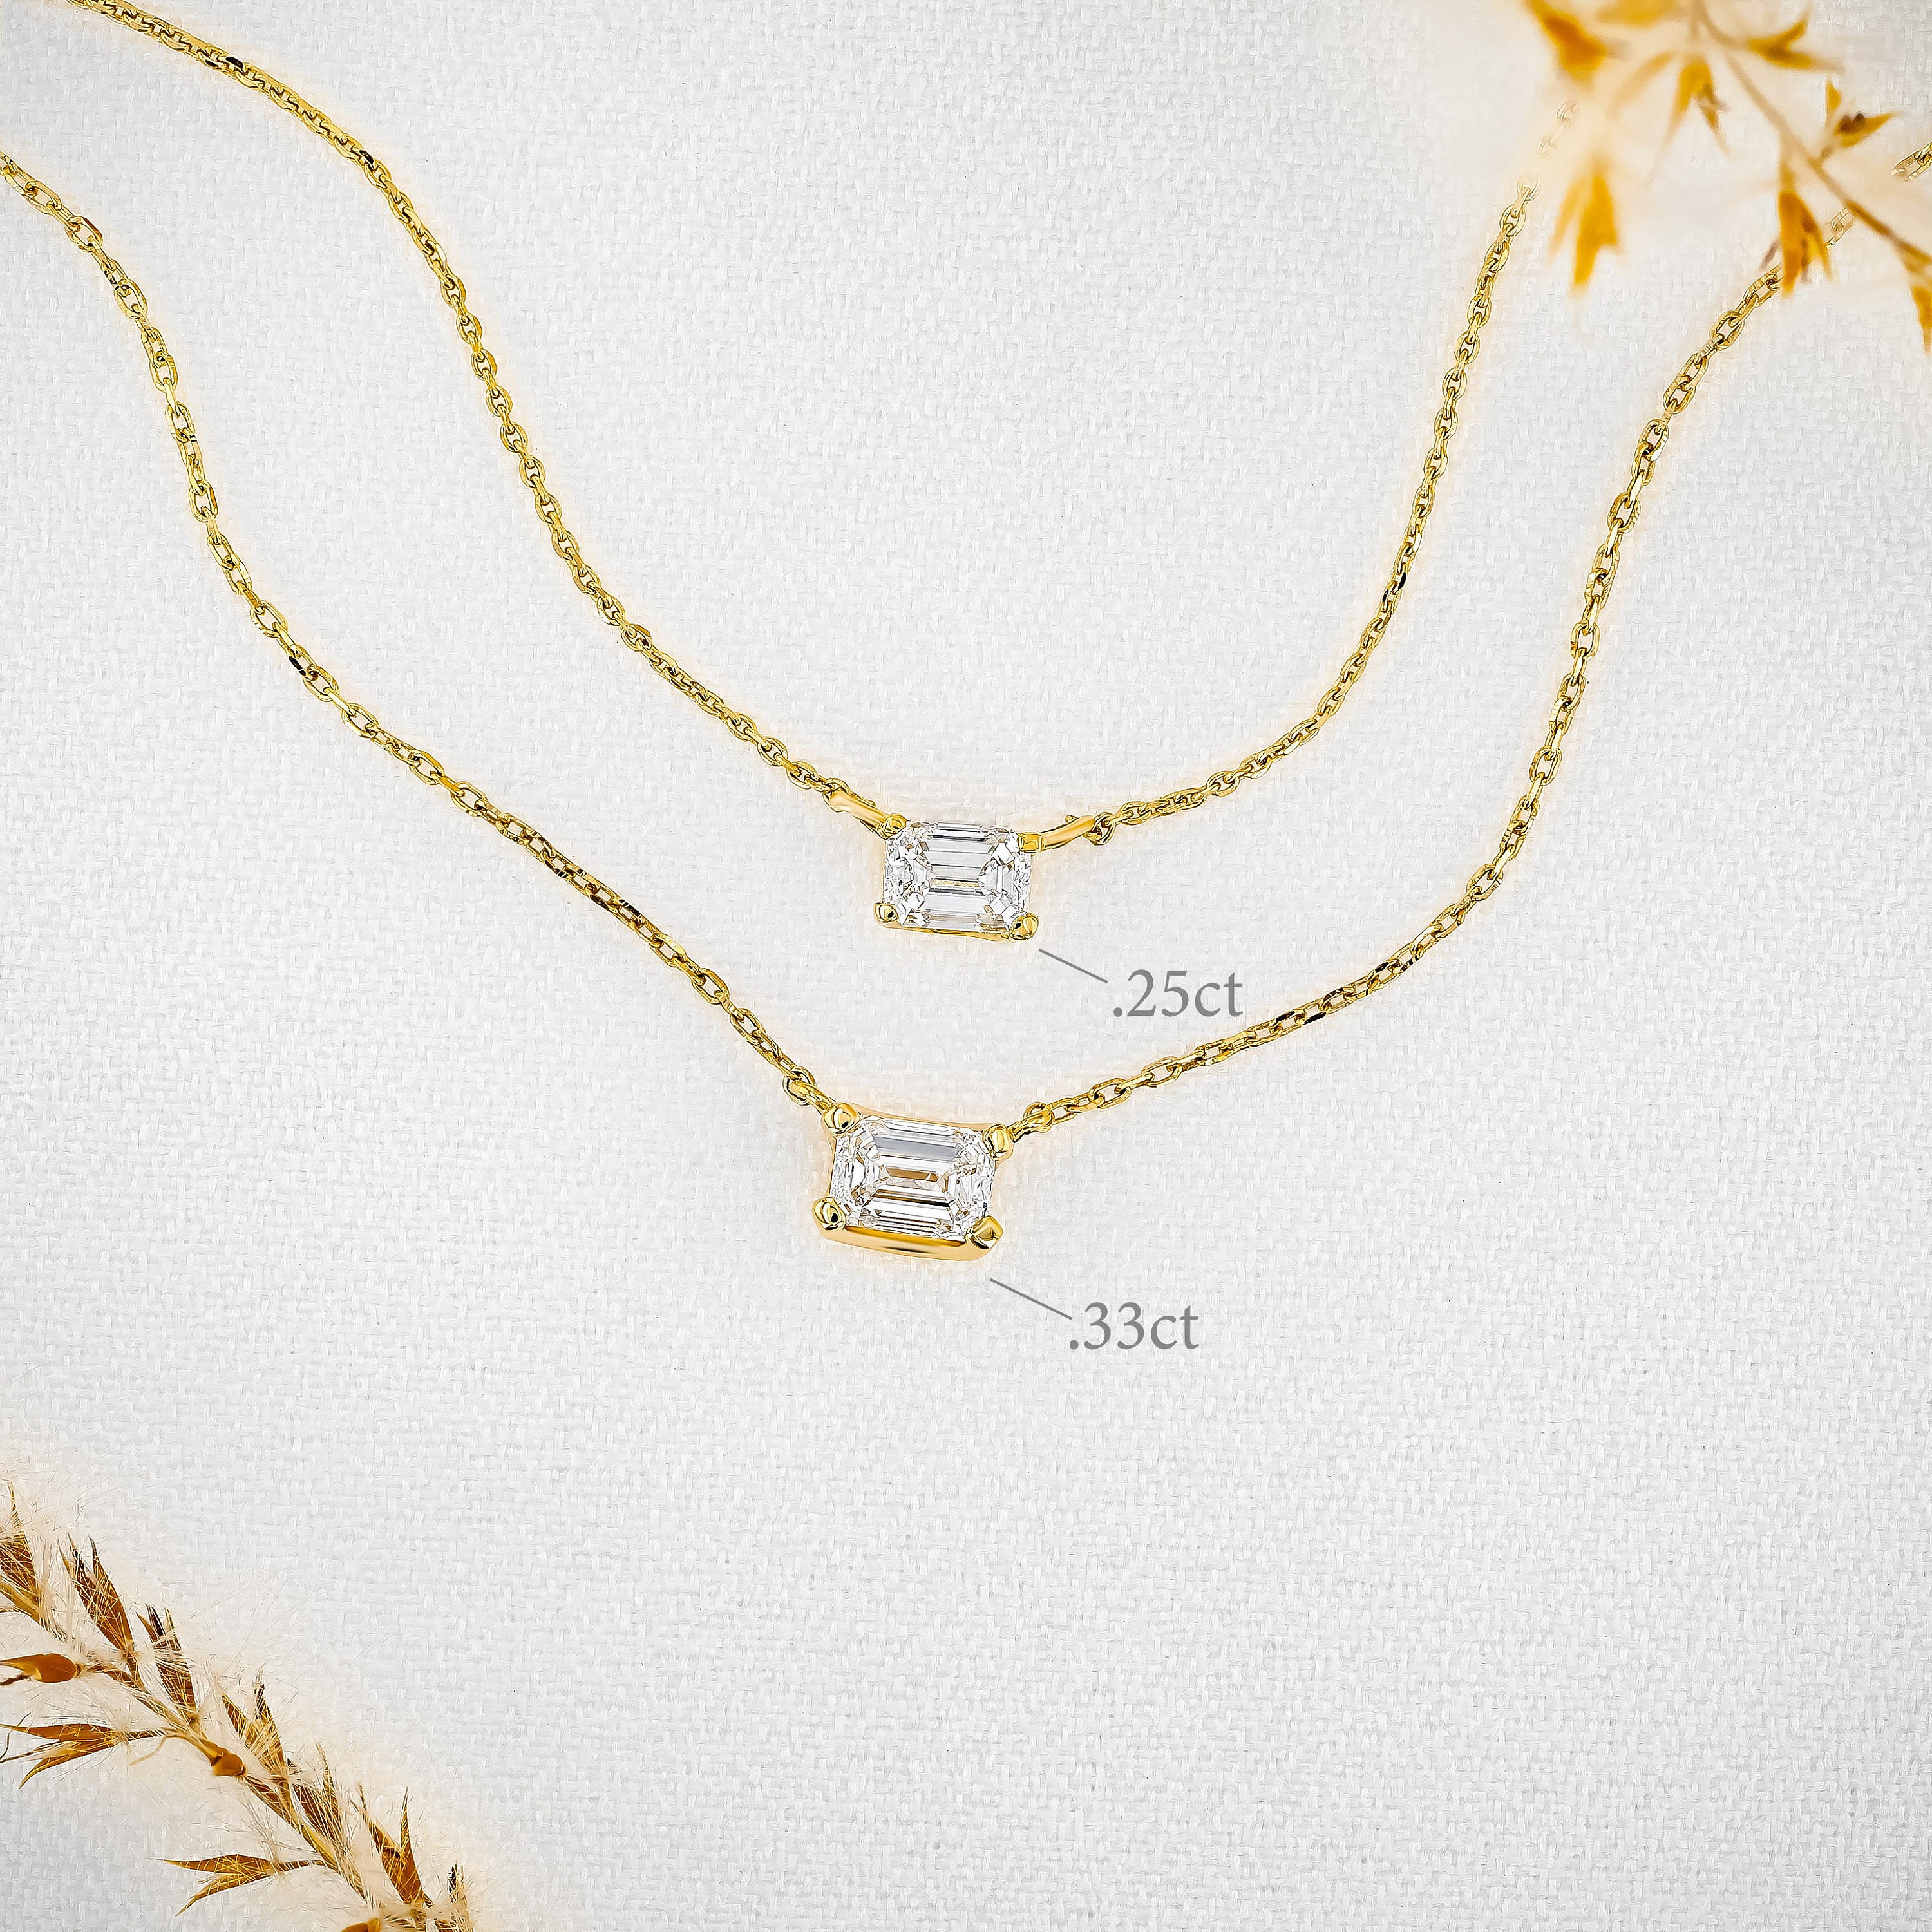 Diamond Solitaire Necklace | Modern jewelry, Beautiful jewelry, Jewelry